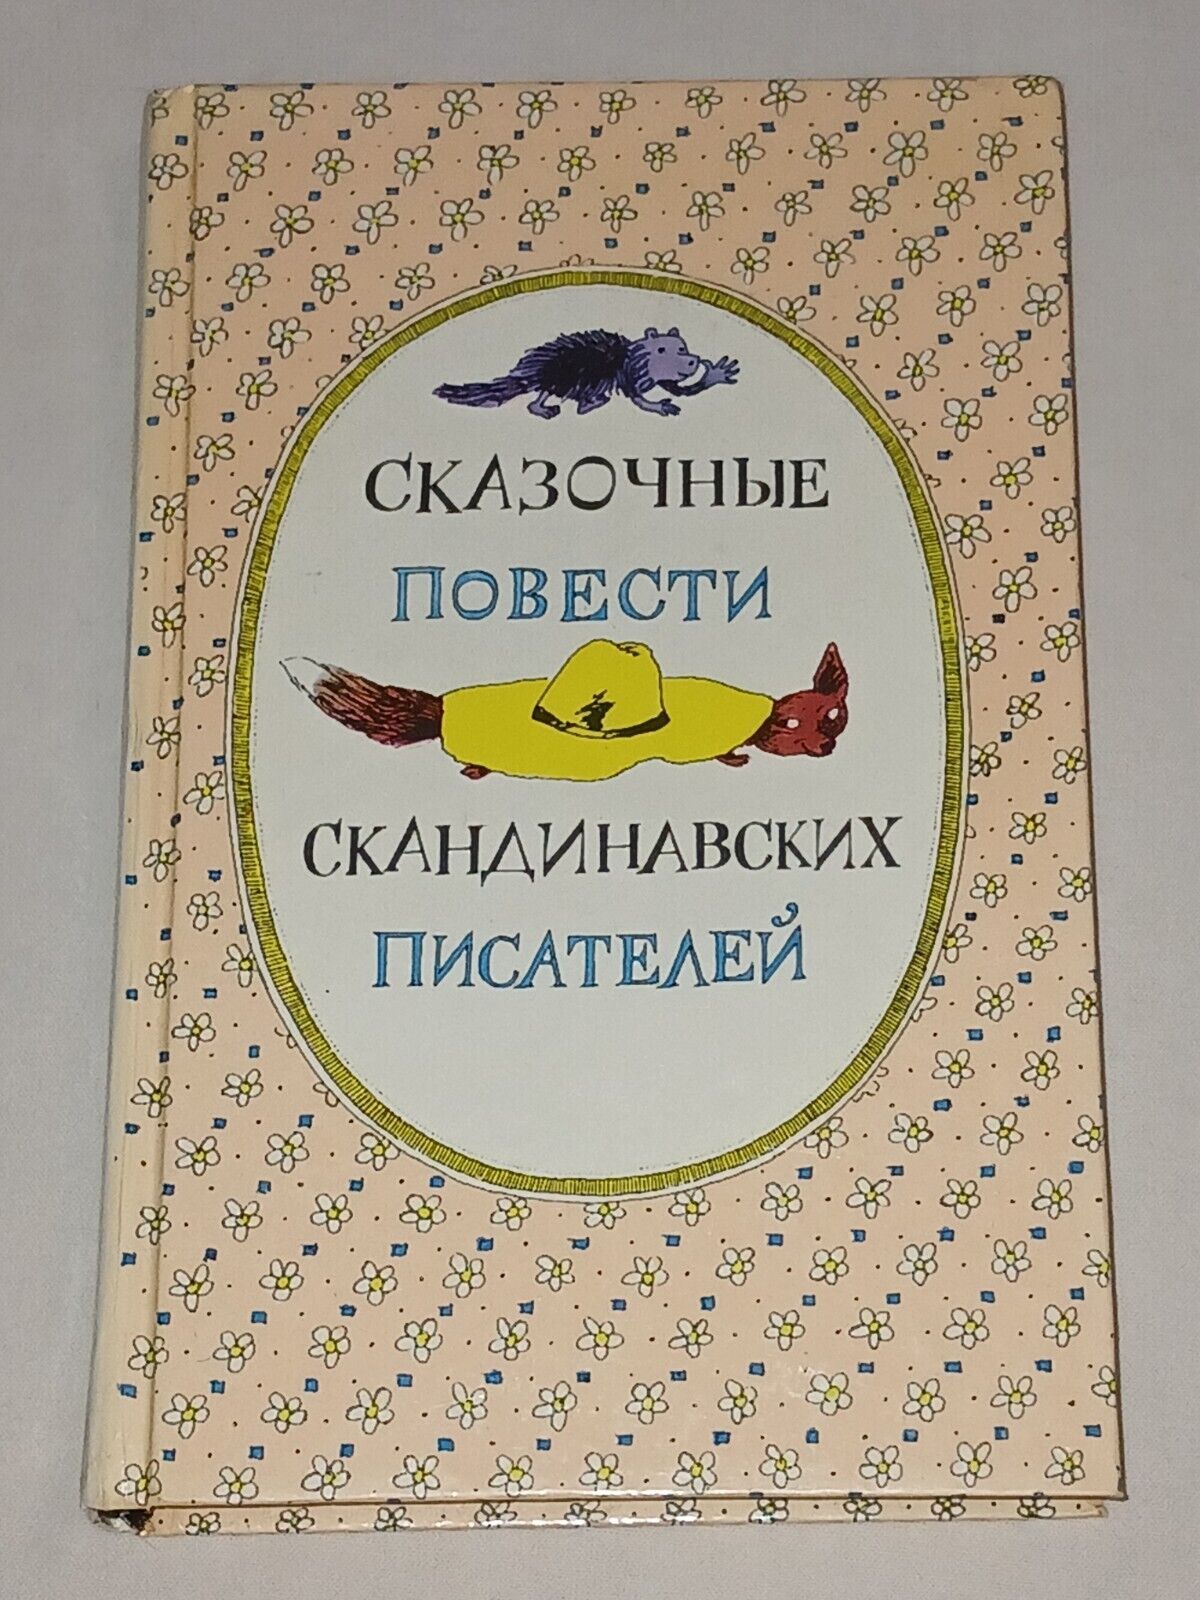 1987 Fairy tales of Scandinavian writers. Vintage Soviet book USSR in Russian